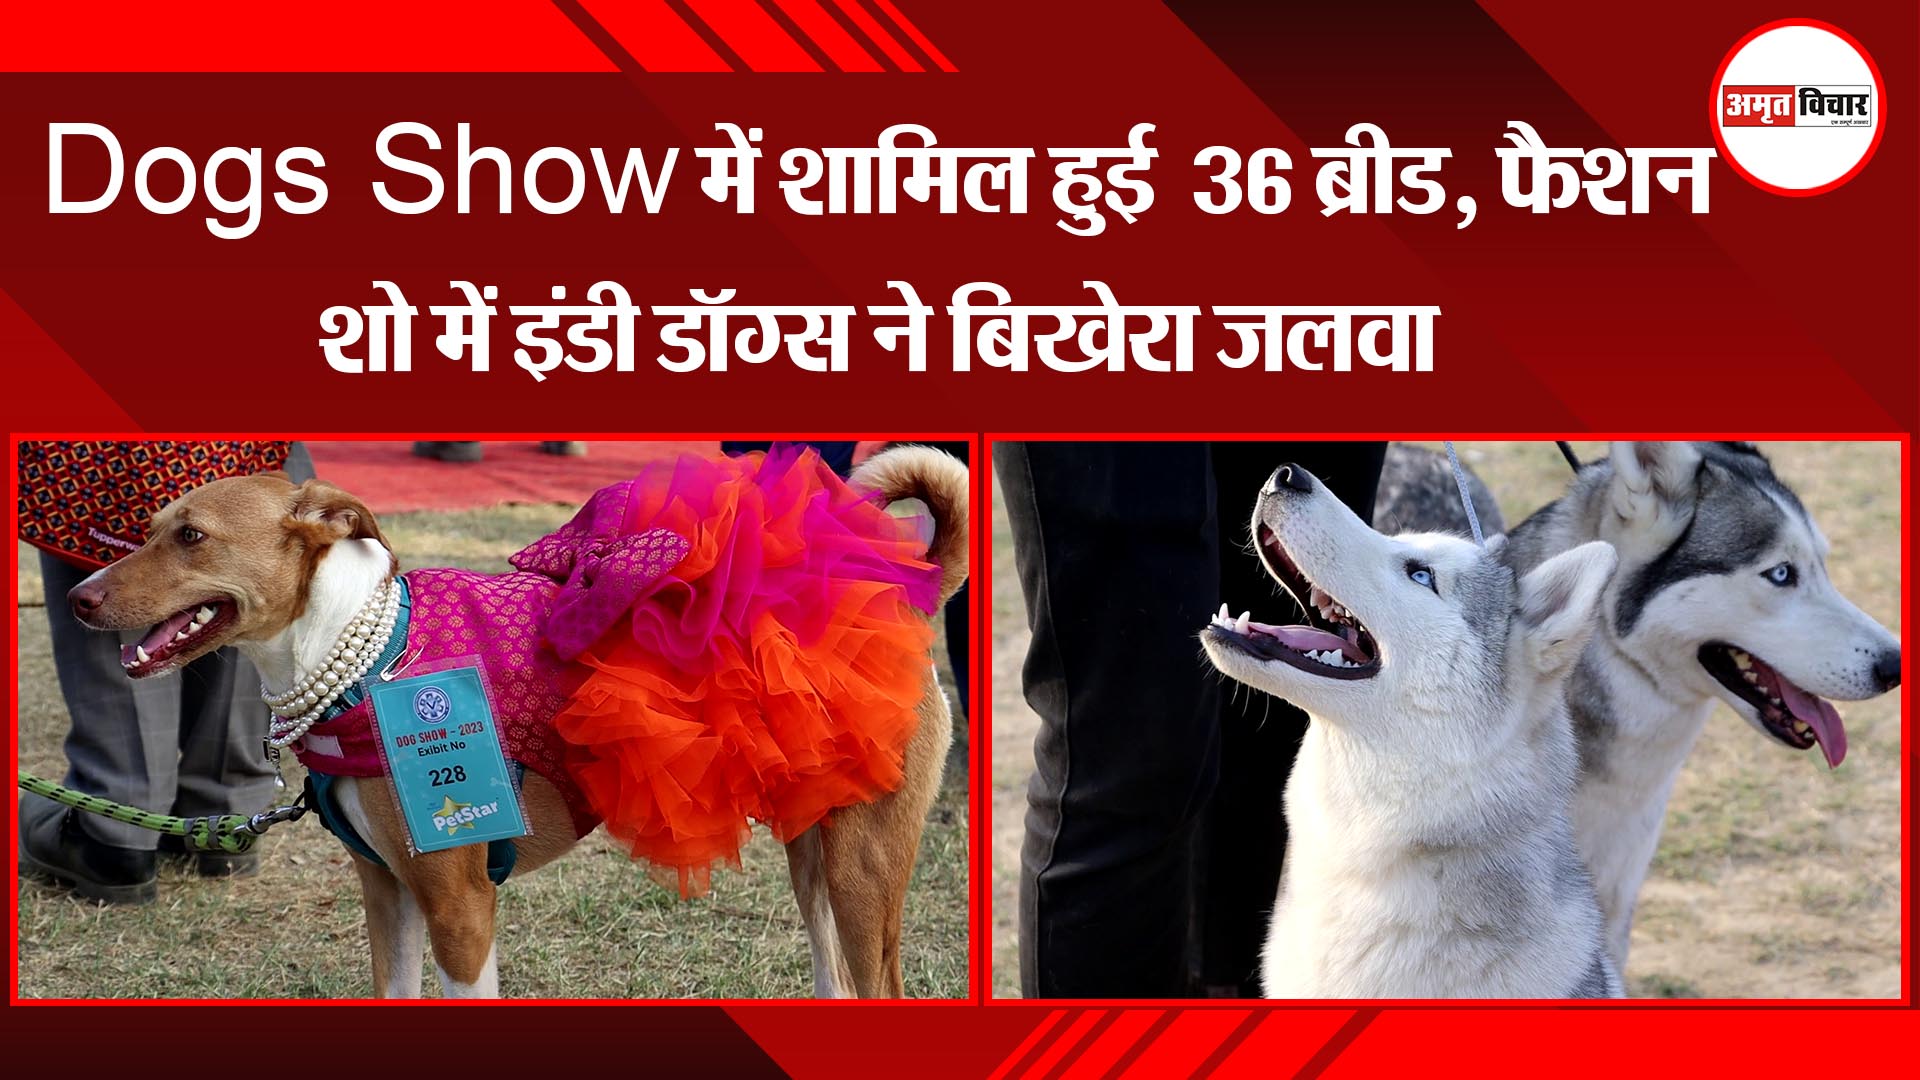 लखनऊ: Dogs Show में शामिल हुई  36 ब्रीड, फैशन शो में इंडी डॉग्स ने बिखेरा जलवा